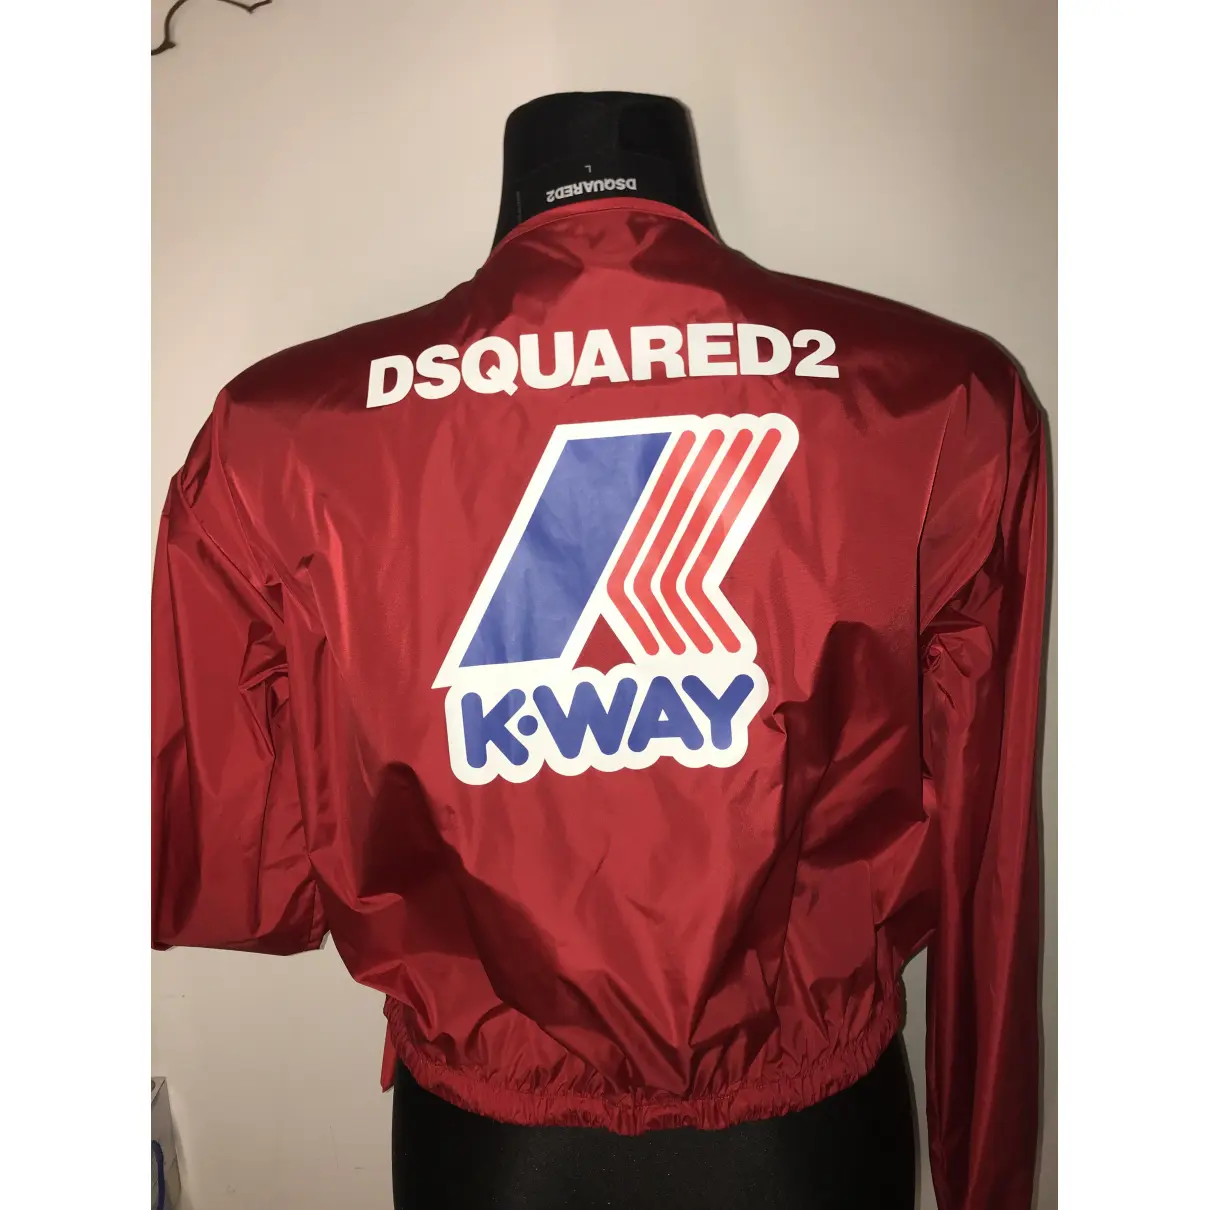 Buy Dsquared2 Jacket online